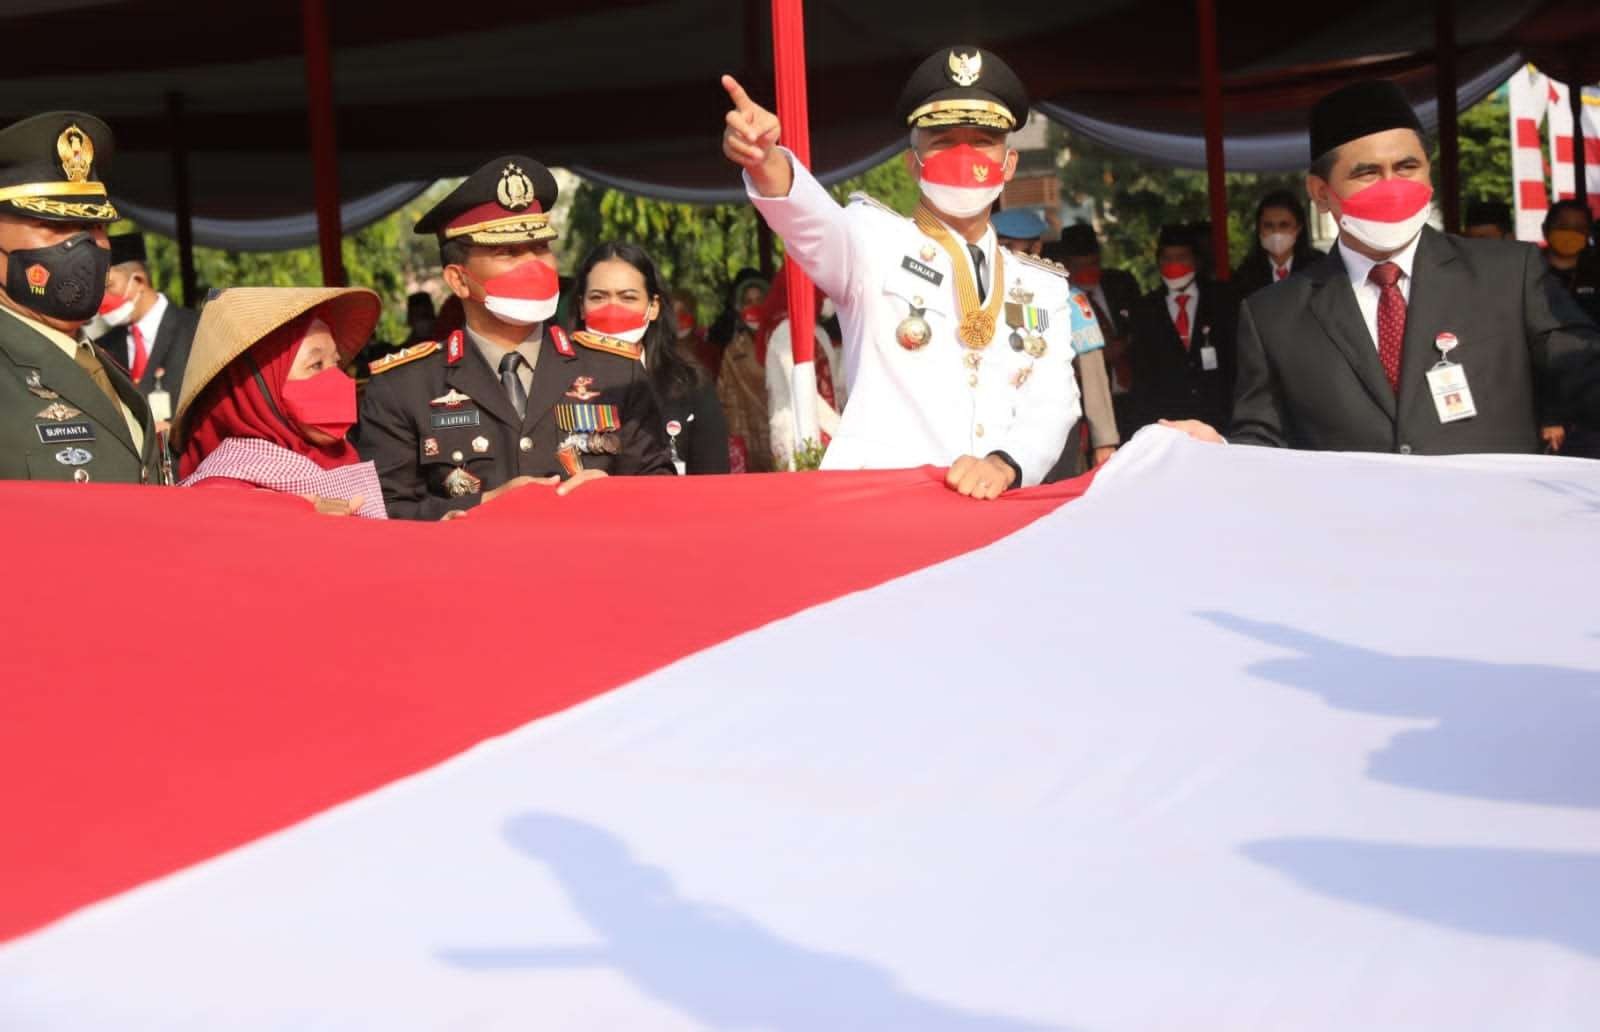 Buruh migran memberikan bendera merah putih ukuran besar kepada Gubernur Jateng Ganjar Pranowo di Lapangan Pancasila Semarang, Rabu 17 Agustus 2022. (Foto: Dokumentasi Pemprov Jateng)